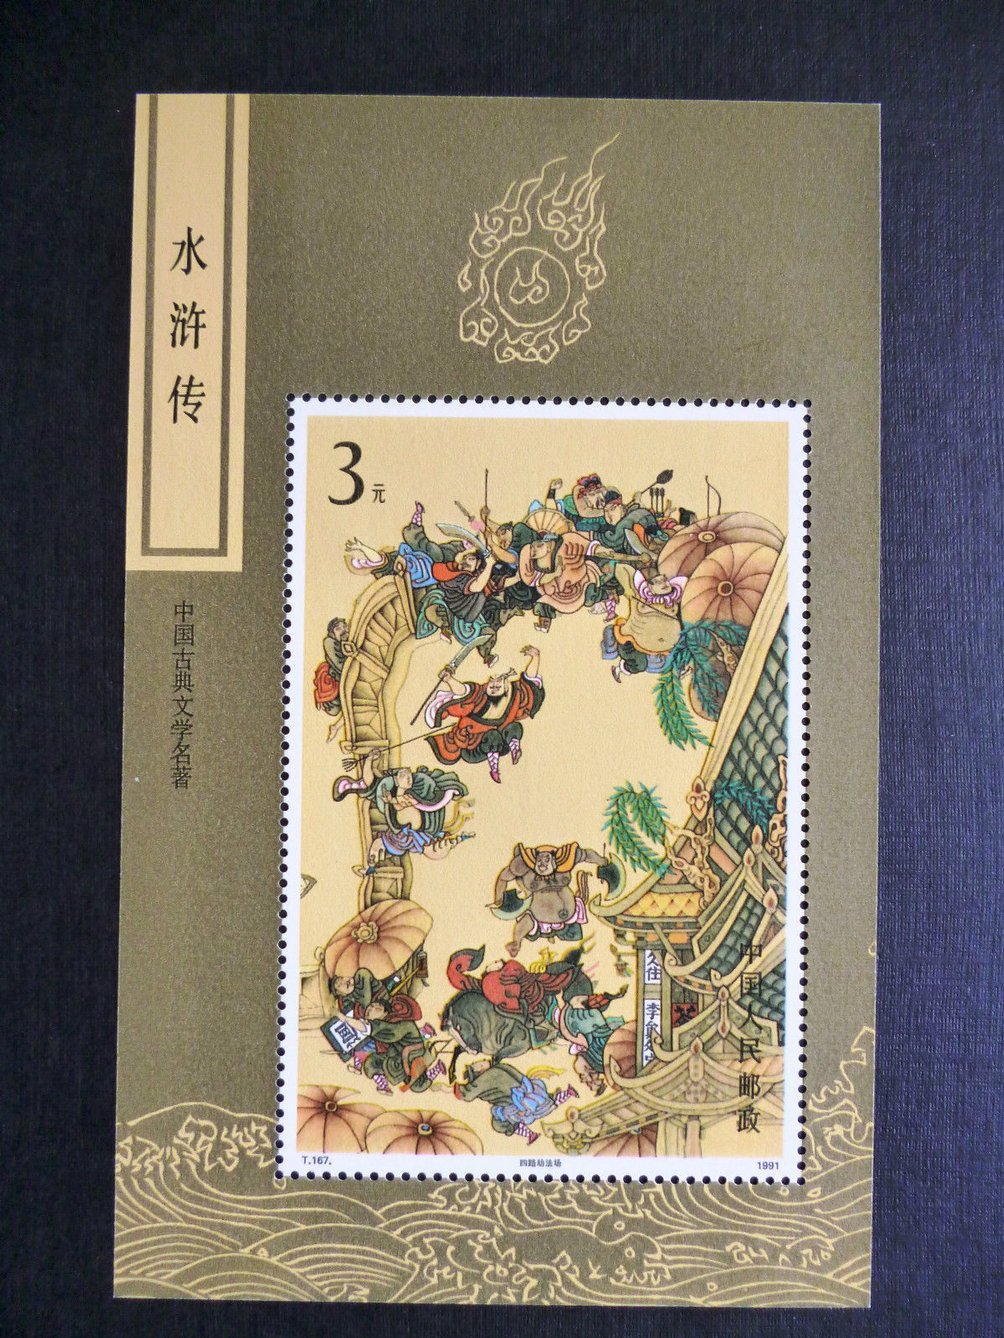 2377 PRC T167M1991 souvenir sheet